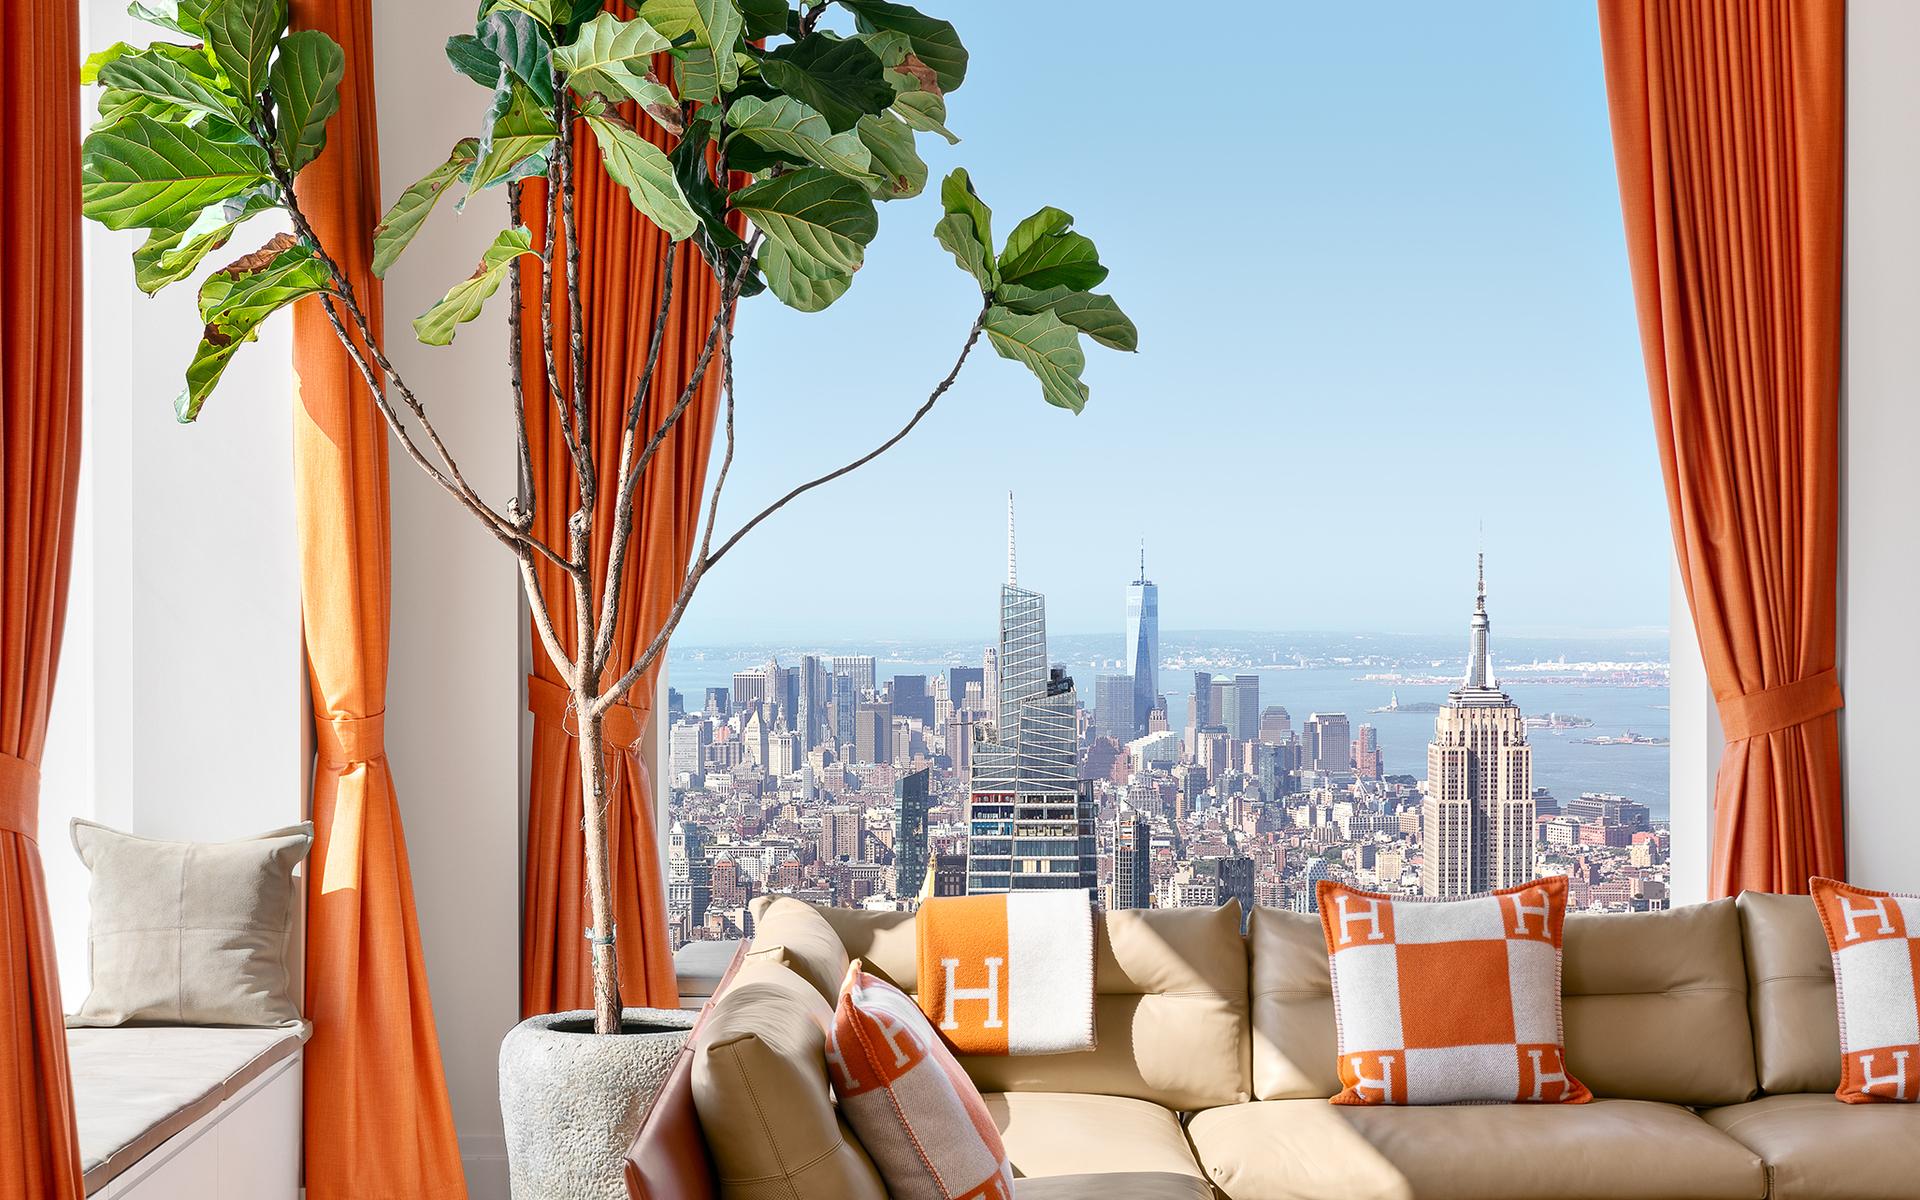 Flera ikoniska byggnader kan man se från takvåningen, som till exempel Empire State Building, 102 våningar hög.